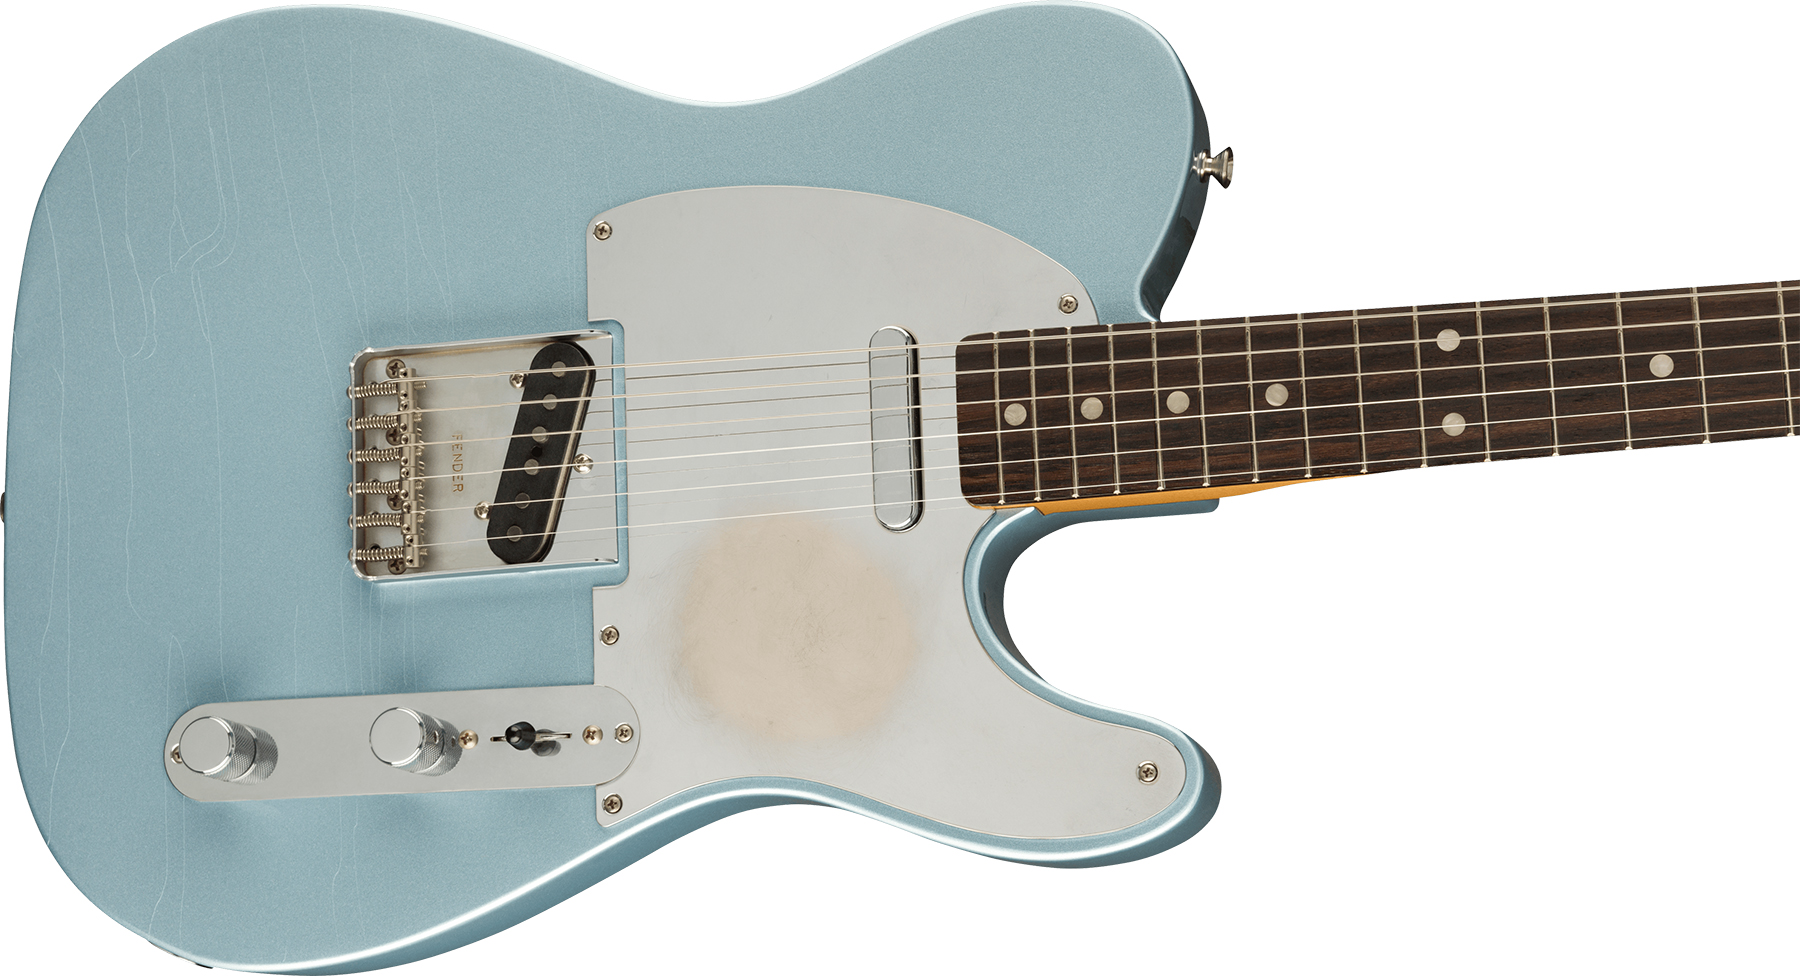 Fender Chrissie Hynde Tele Signature Mex Rw - Road Worn Faded Ice Blue Metallic - Televorm elektrische gitaar - Variation 2